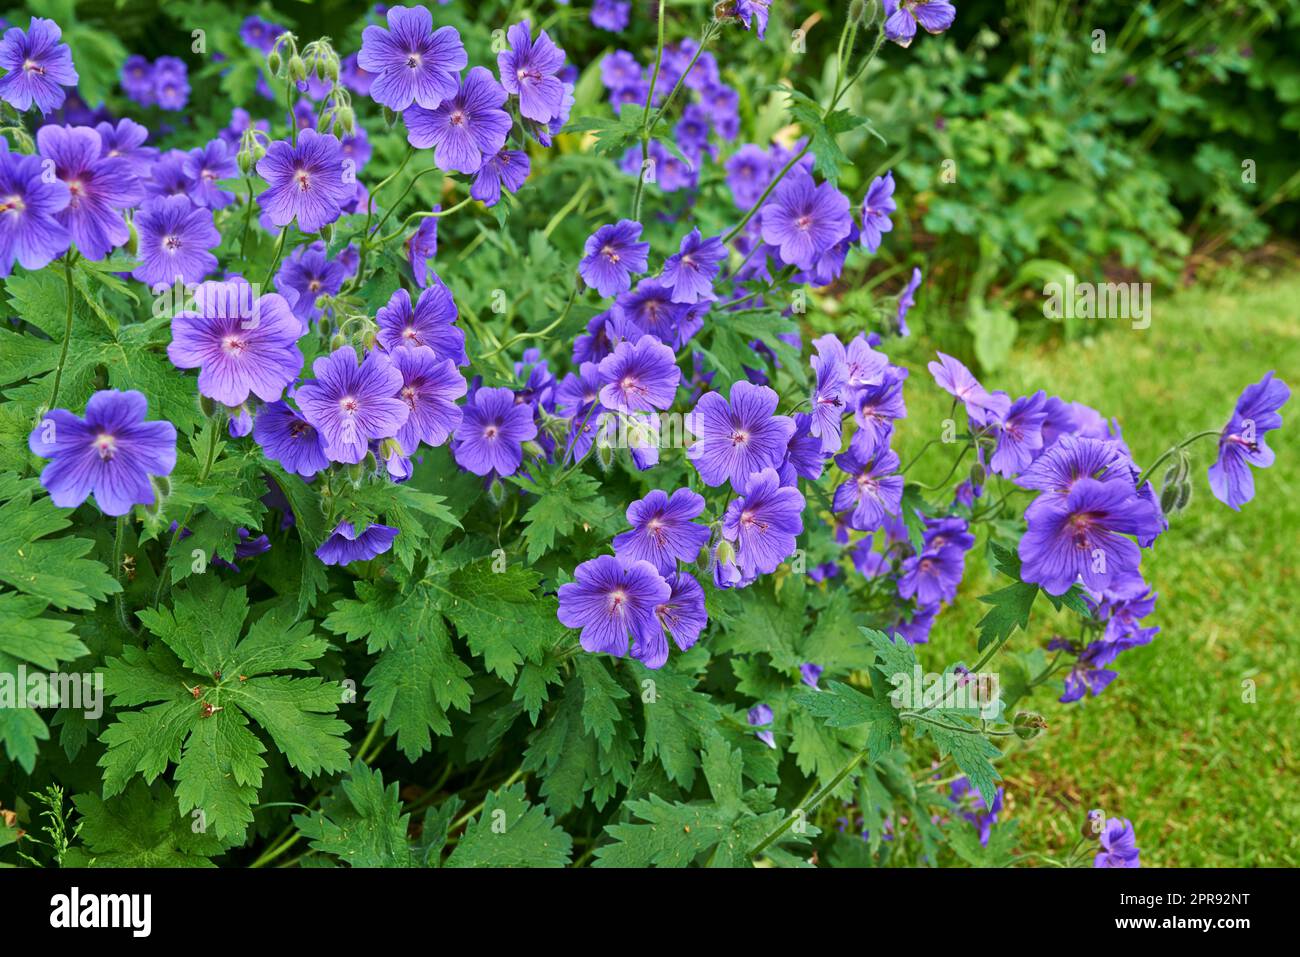 Groupe de belles fleurs bleu violet nom commun de la famille Geraniaceae, croissant dans un pré. Géranium bleu Johnson vivace fleurs avec des pétales bleus dans un jardin vert naturel vibrant Banque D'Images